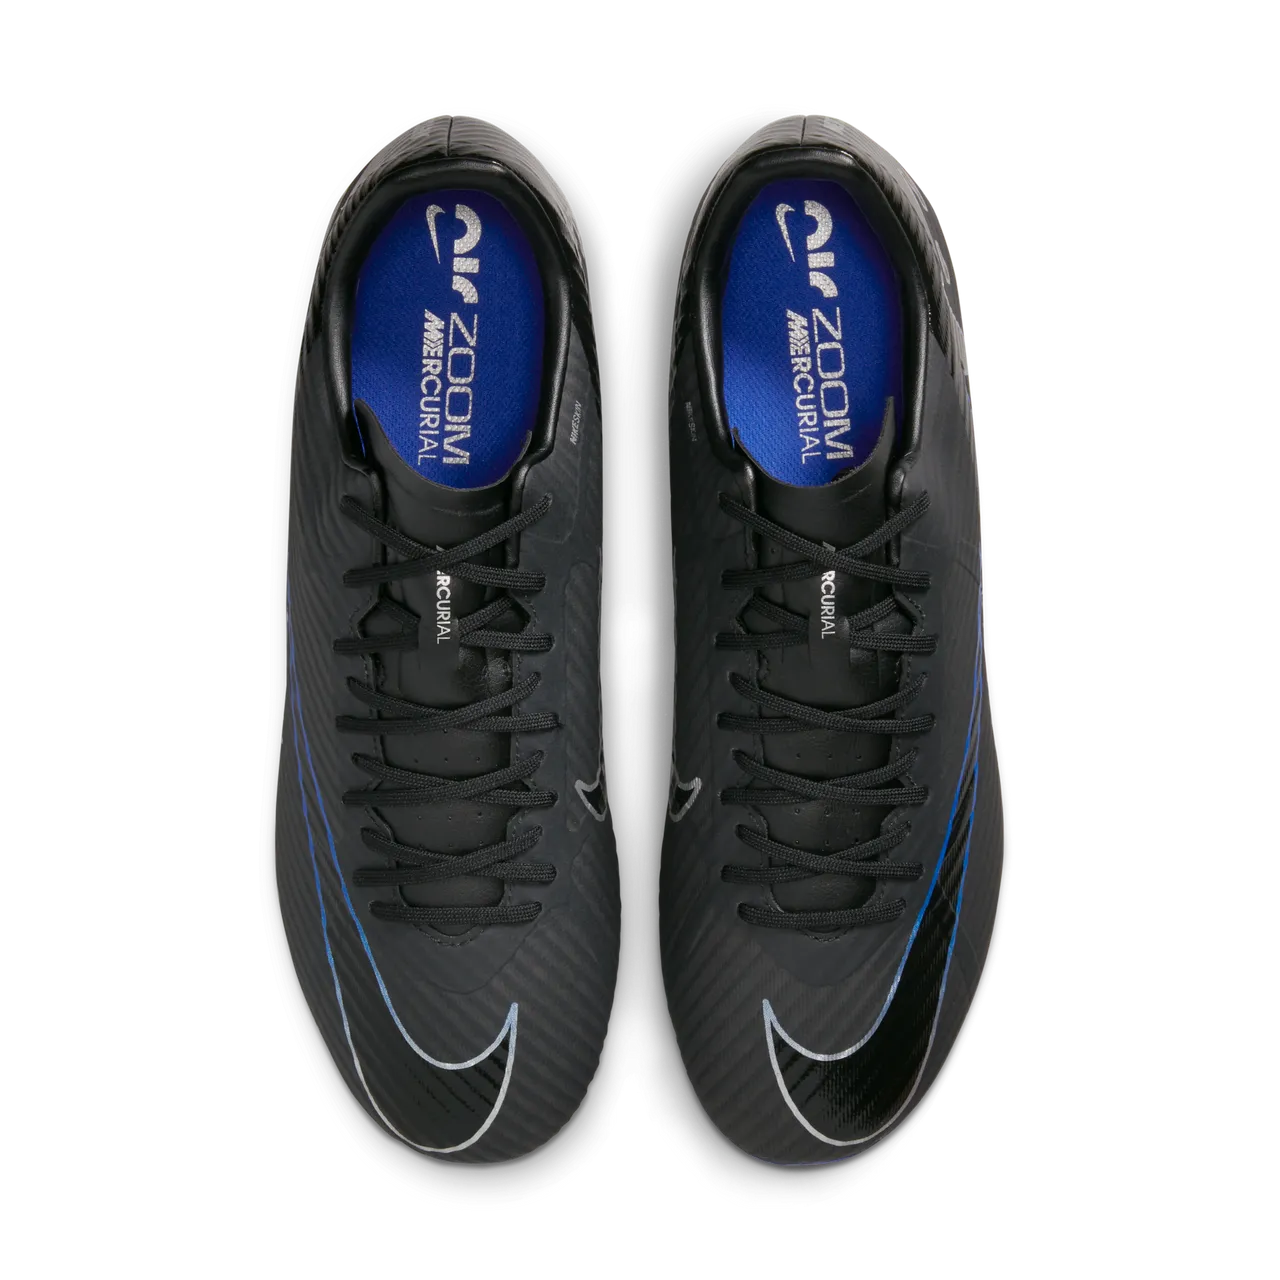 Nike Mercurial Vapor 15 Academy low top voetbalschoenen (meerdere ondergronden) - Zwart